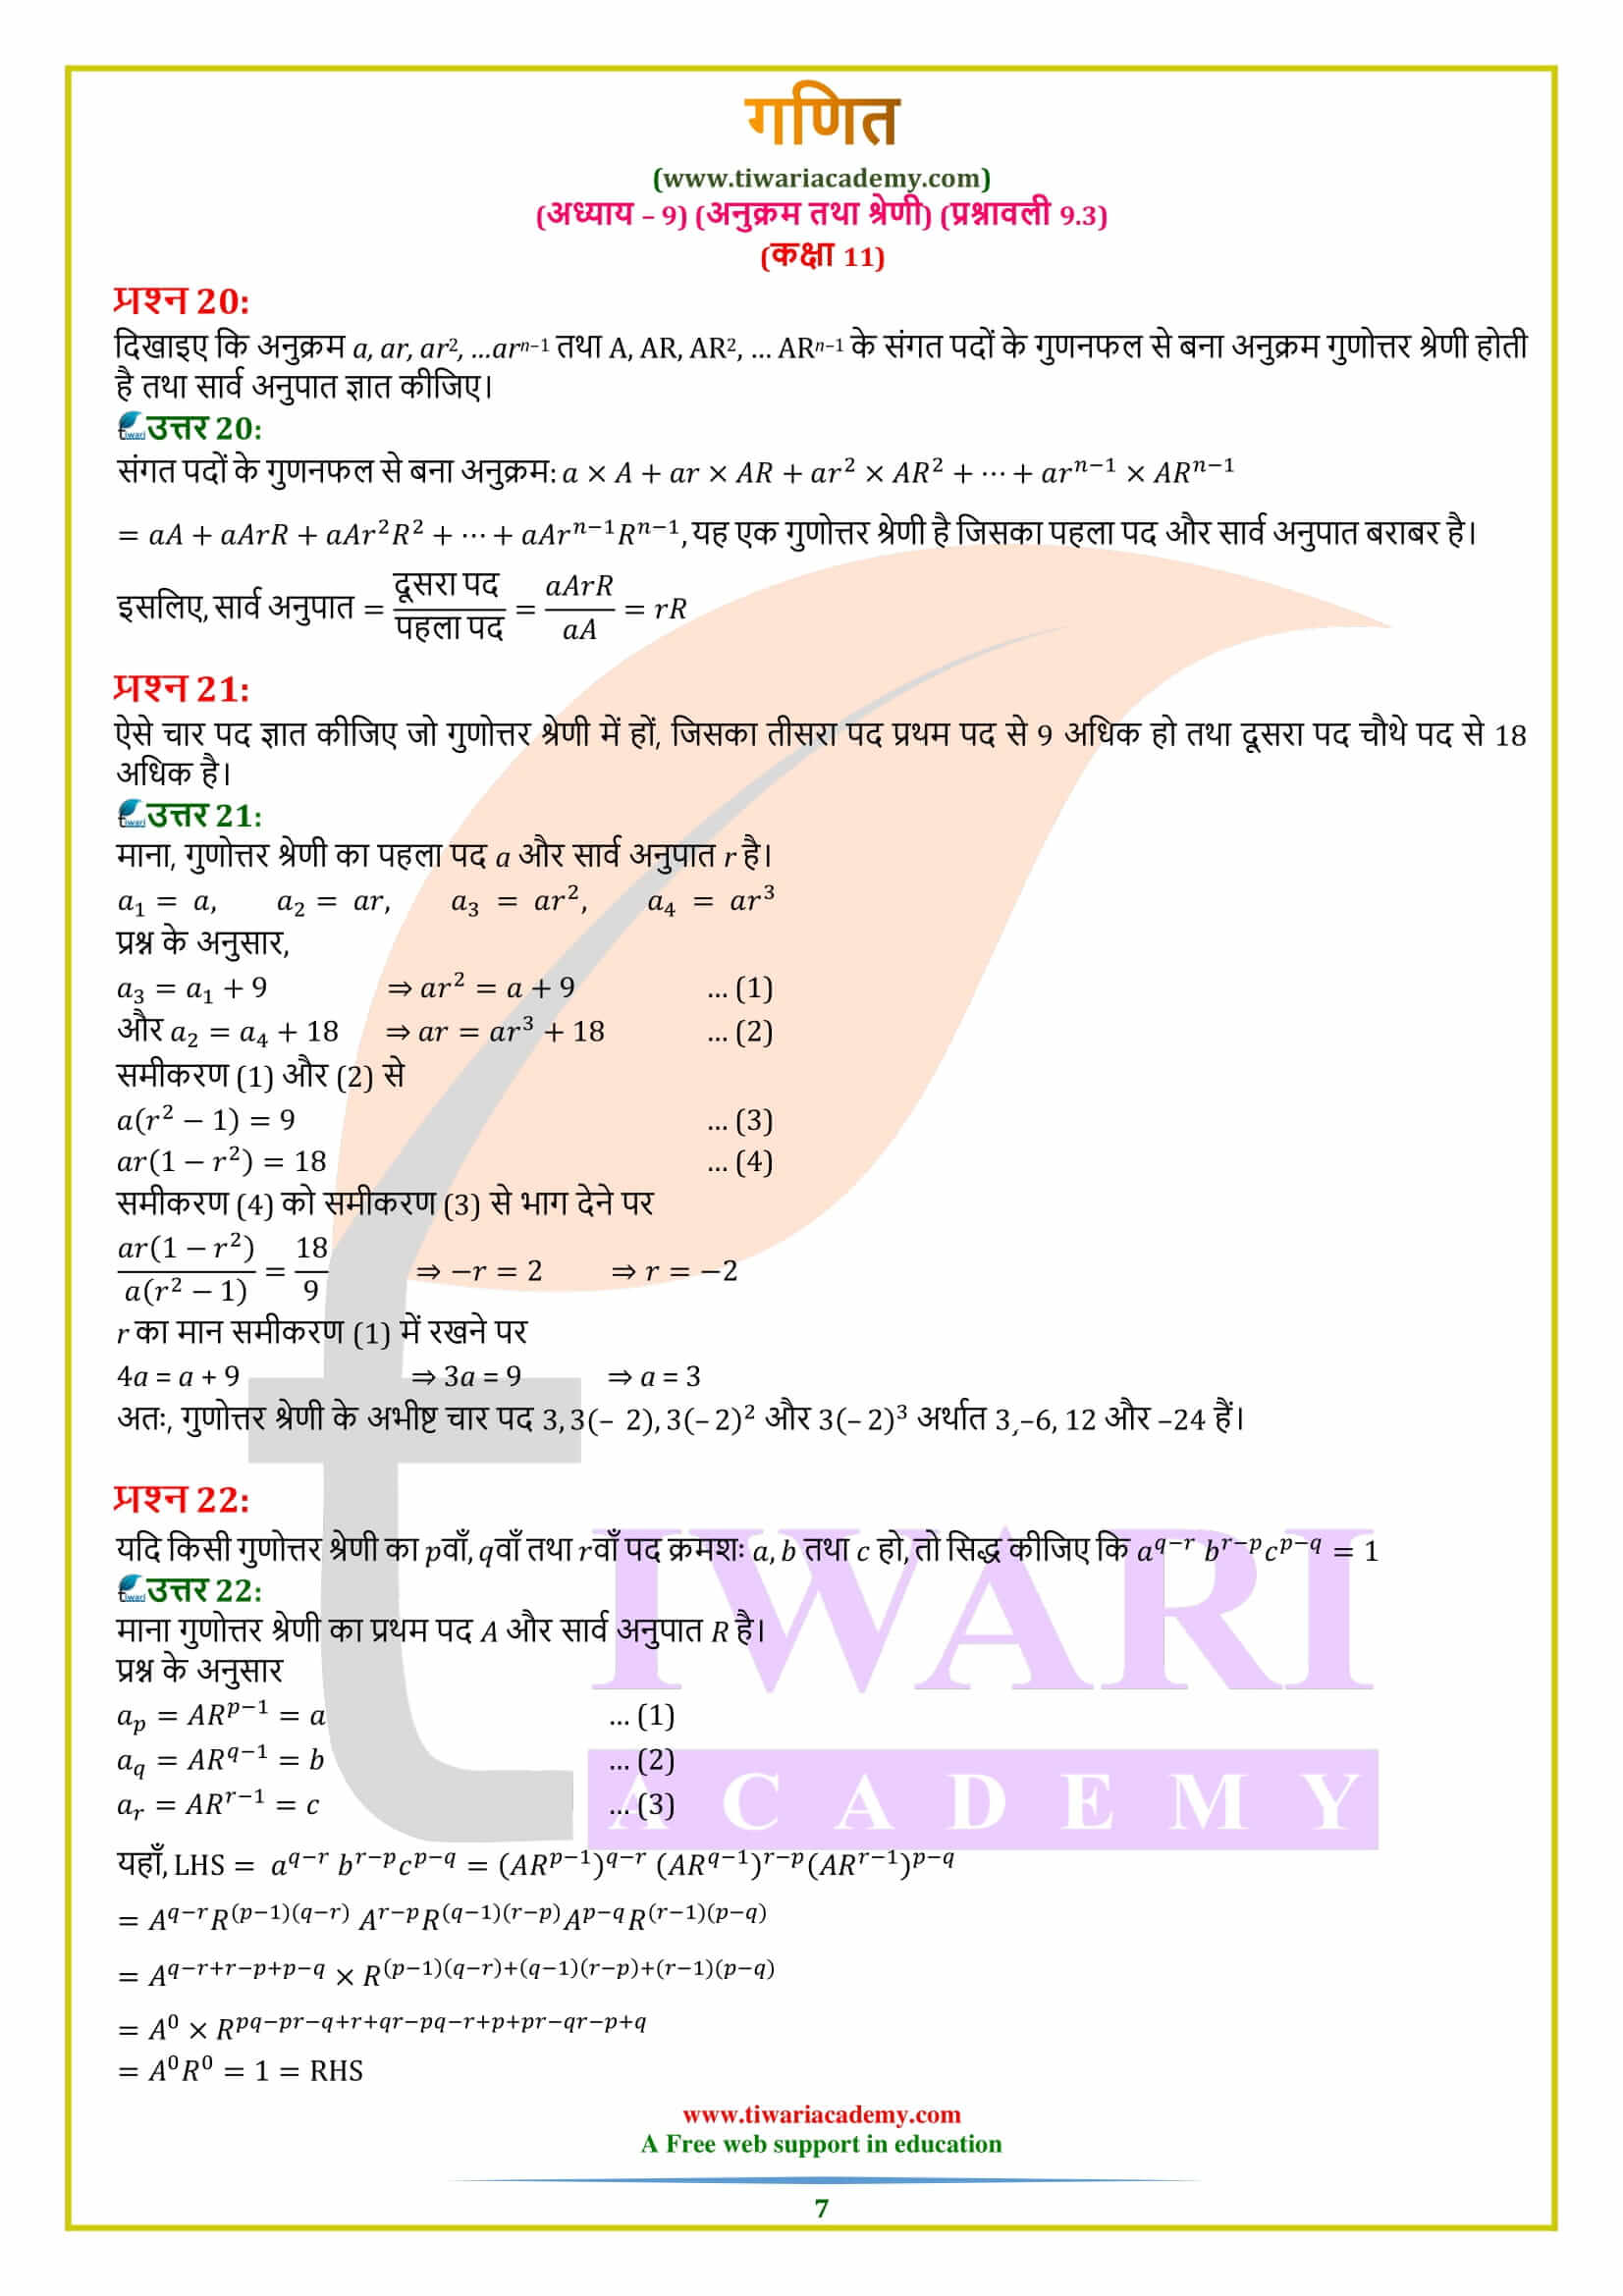 एनसीईआरटी समाधान कक्षा 11 गणित प्रश्नावली 9.3 के हल हिंदी में